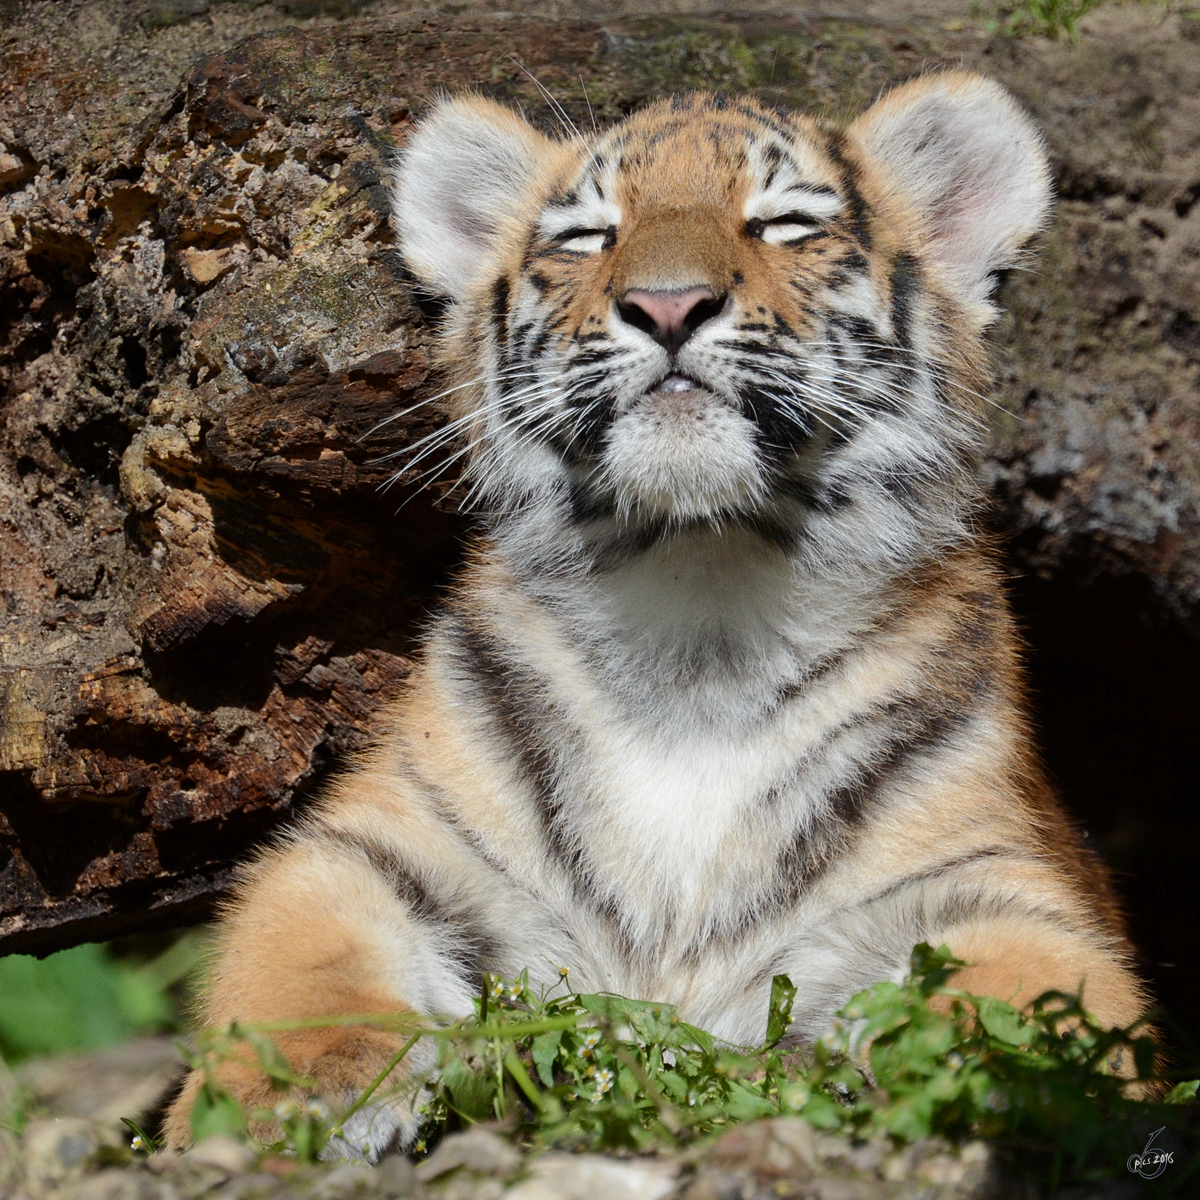 Ein kleiner Sonnenanbeter, dieser junge Tiger. (Zoo Duisburg, September 2011)